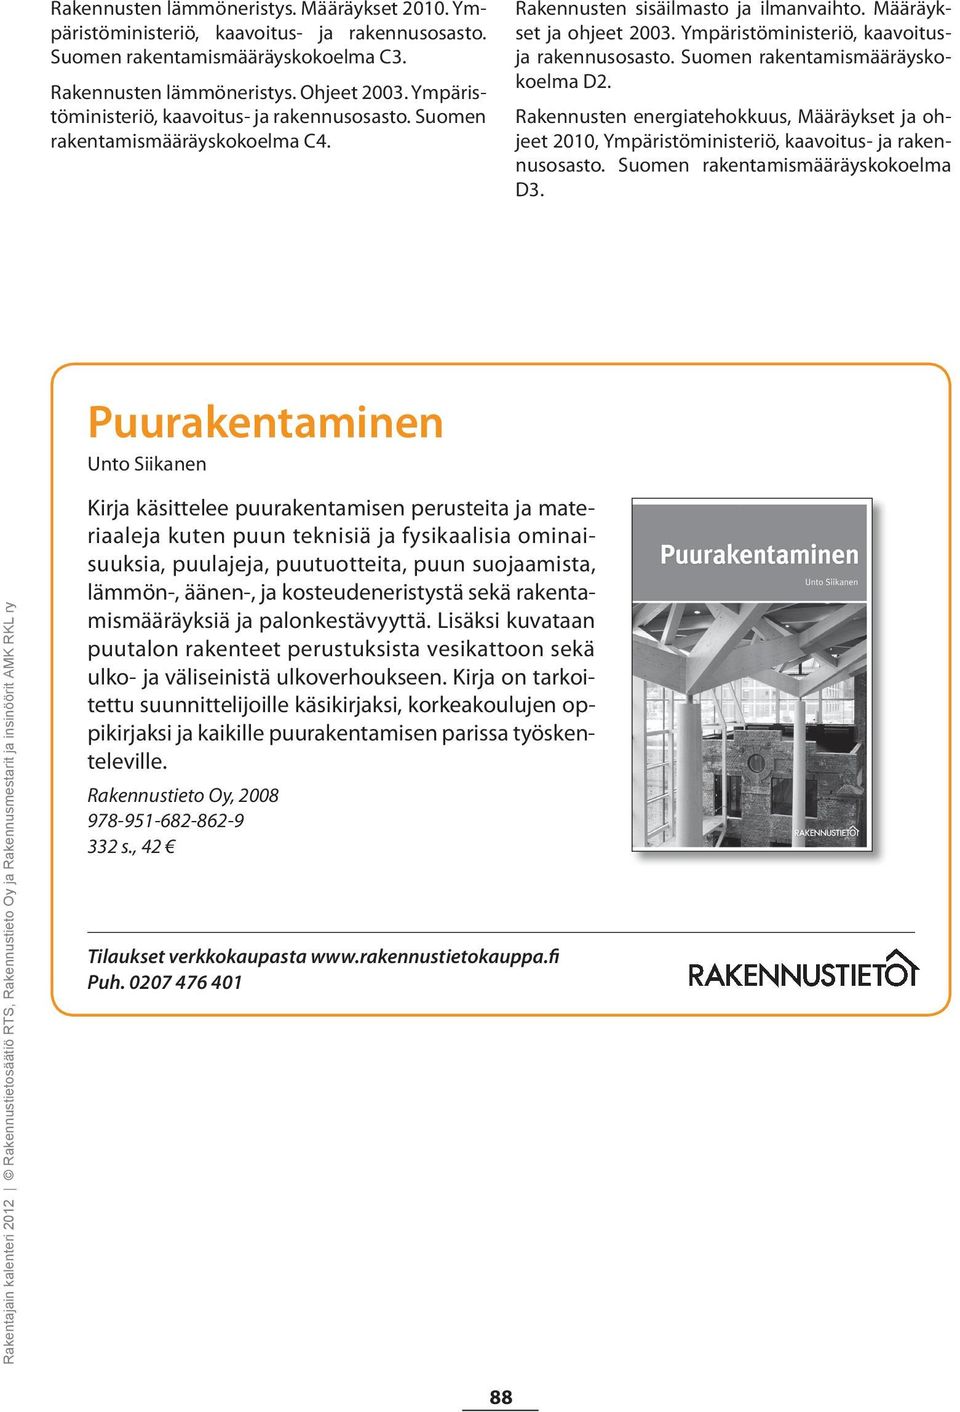 Ympäristöministeriö, kaavoitusja rakennusosasto. Suomen rakentamismääräyskokoelma D2. Rakennusten energiatehokkuus, Määräykset ja ohjeet 2010, Ympäristöministeriö, kaavoitus- ja rakennusosasto.